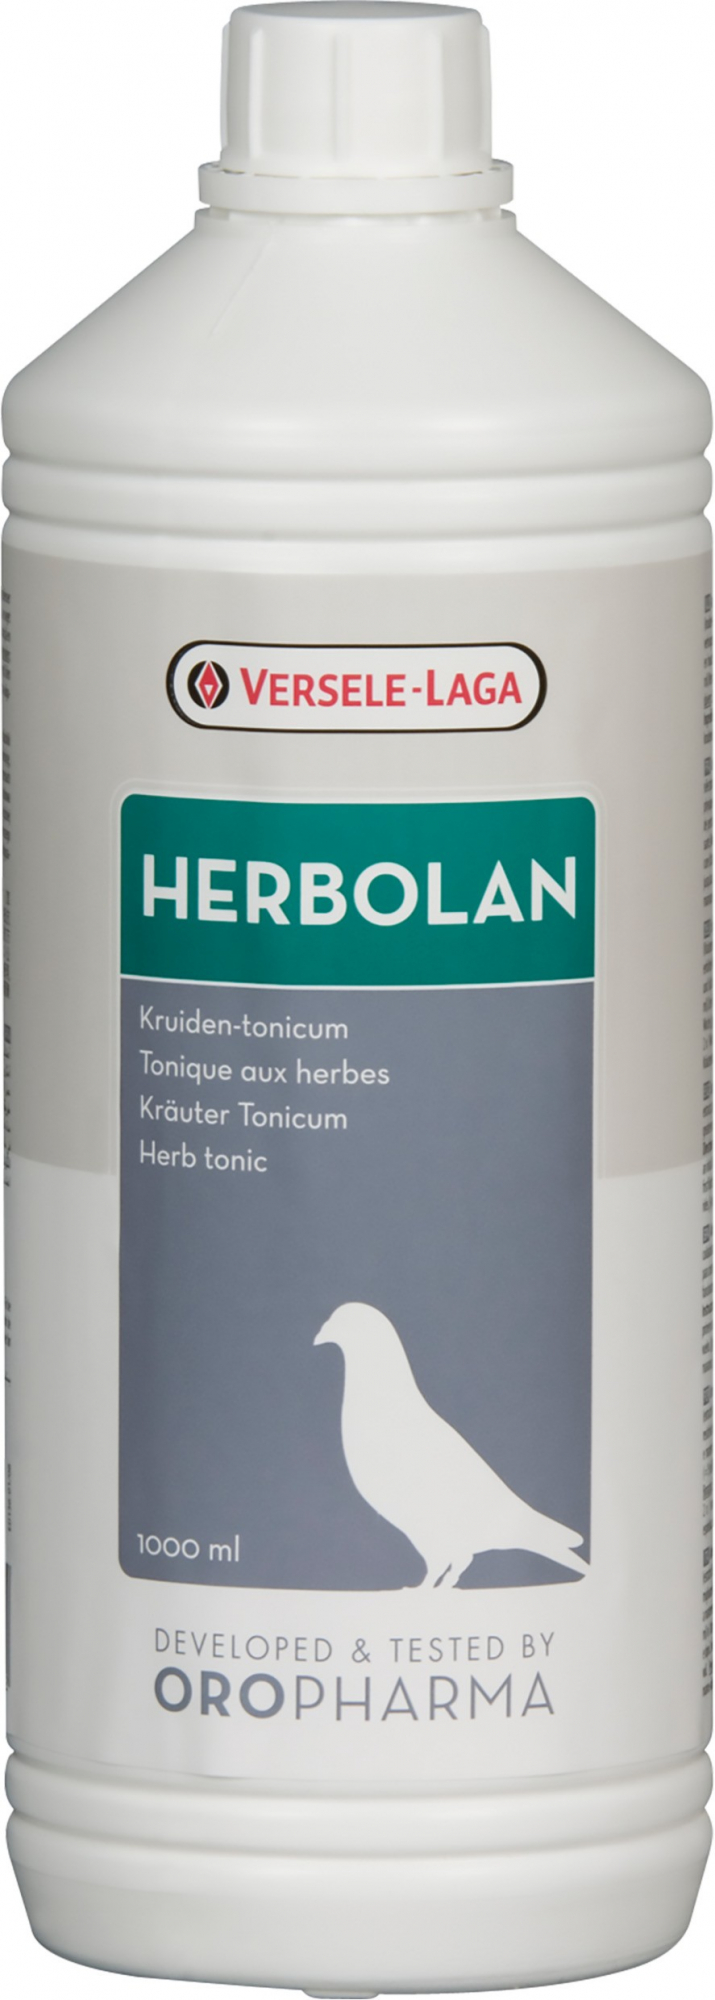 Oropharma Herbolan tonique aux herbes, condition physique et endurance